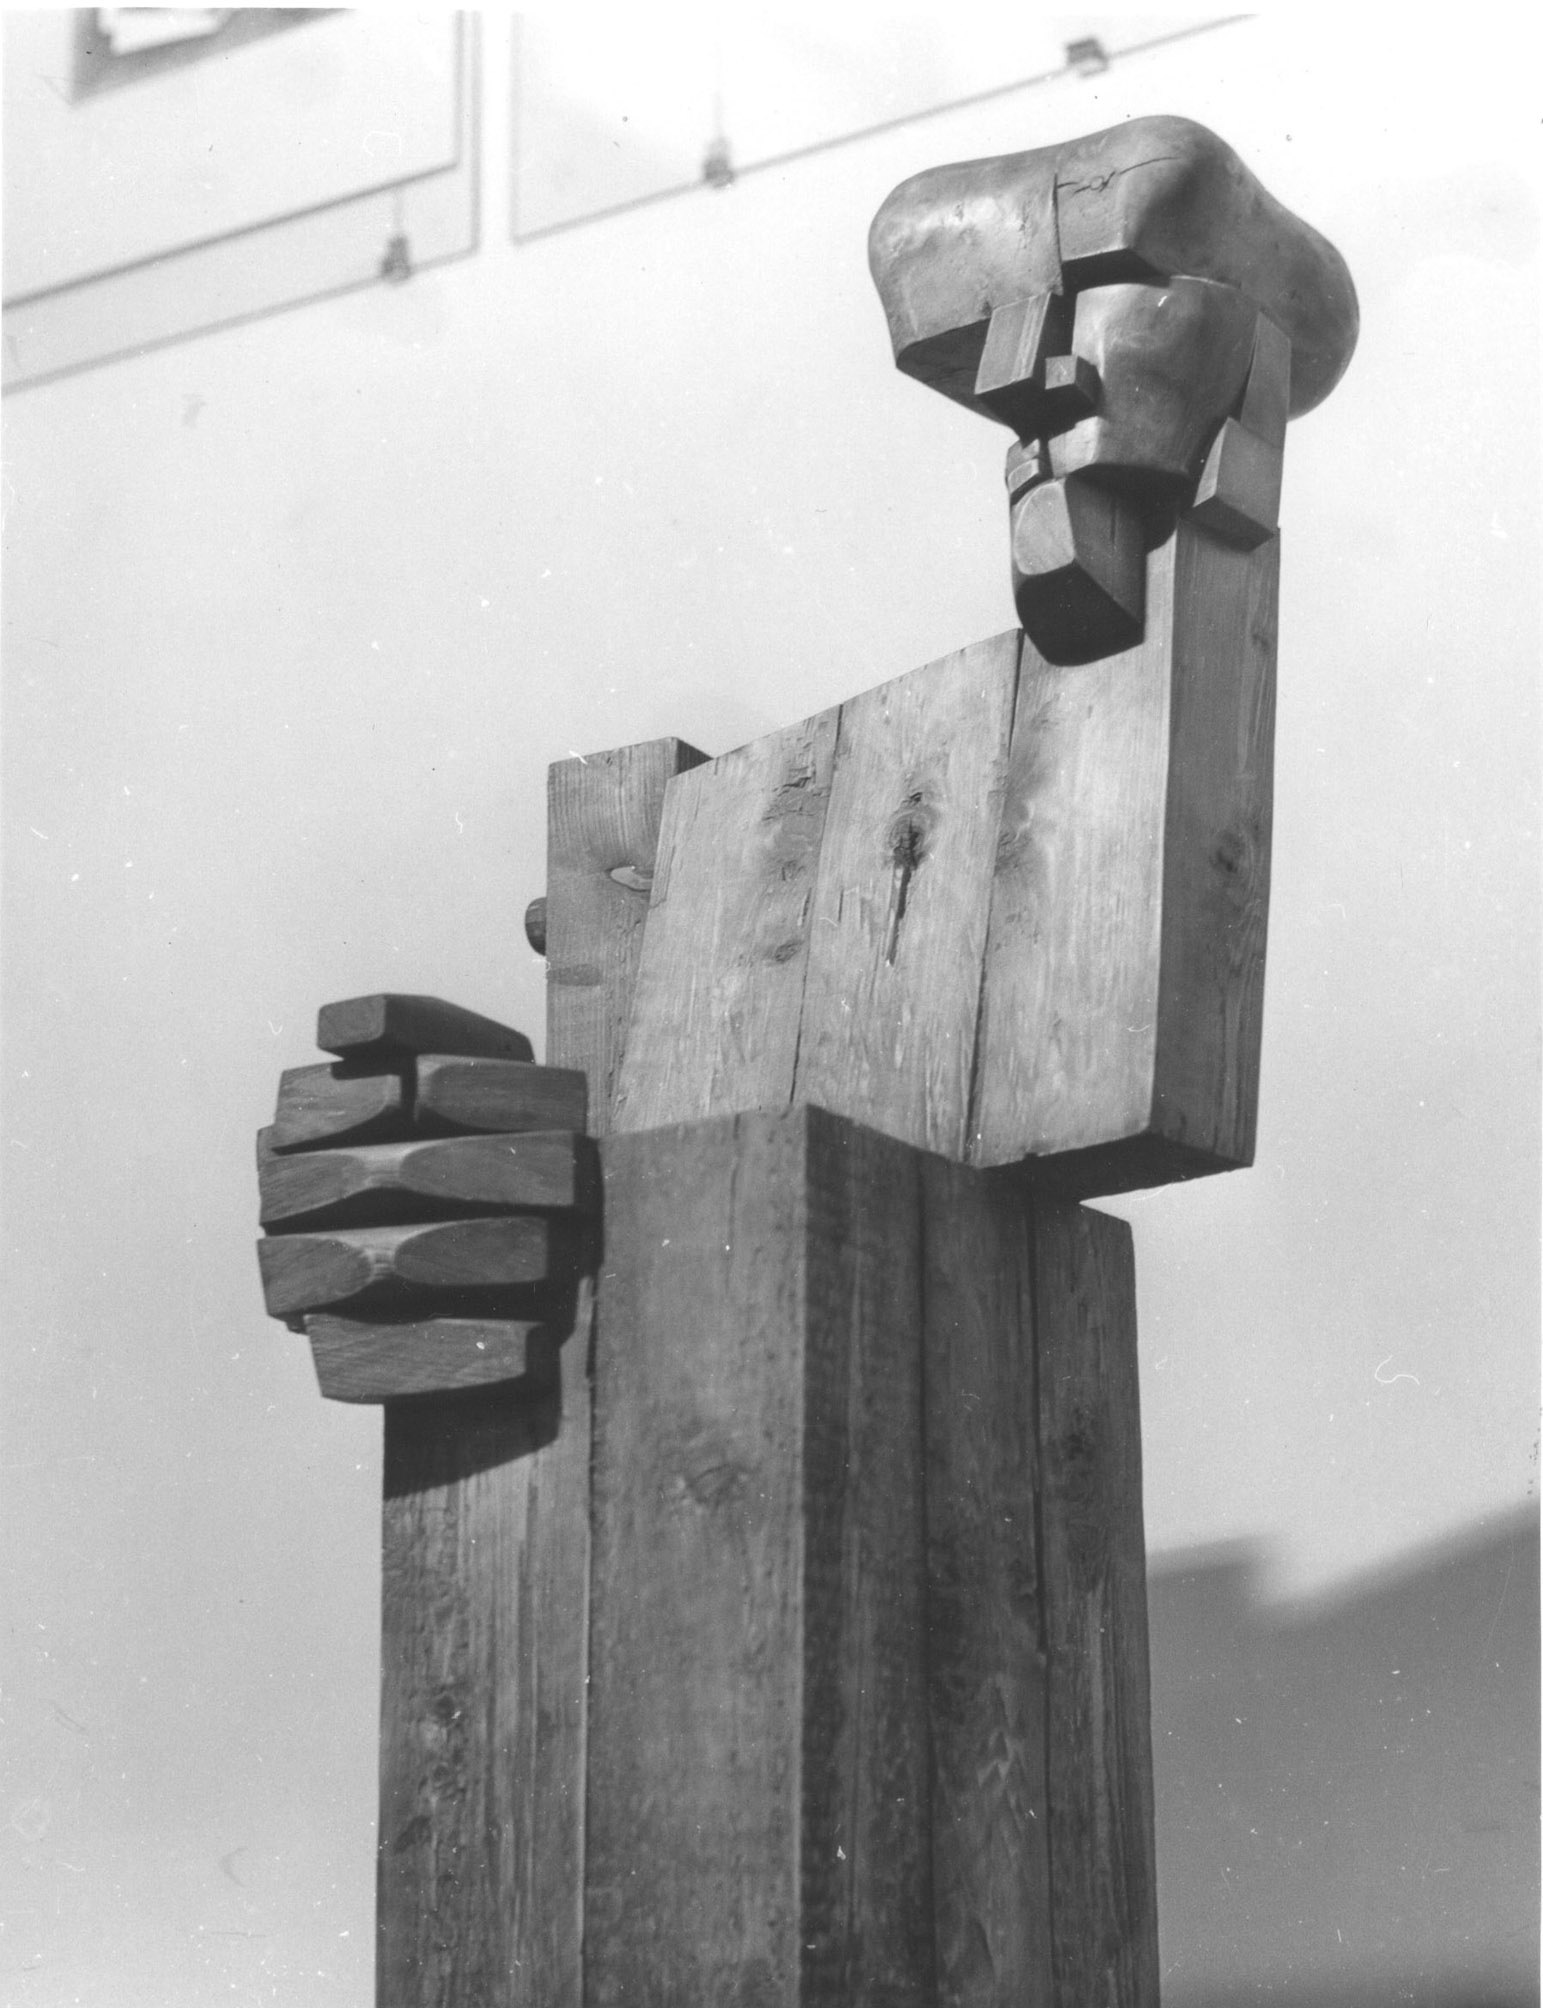 Komplet gabinetowy, 1893/1984 rok, drewno klejone; wystawa indywidualna rzeźby w Galerii "Pryzmat" - ZPAP Kraków